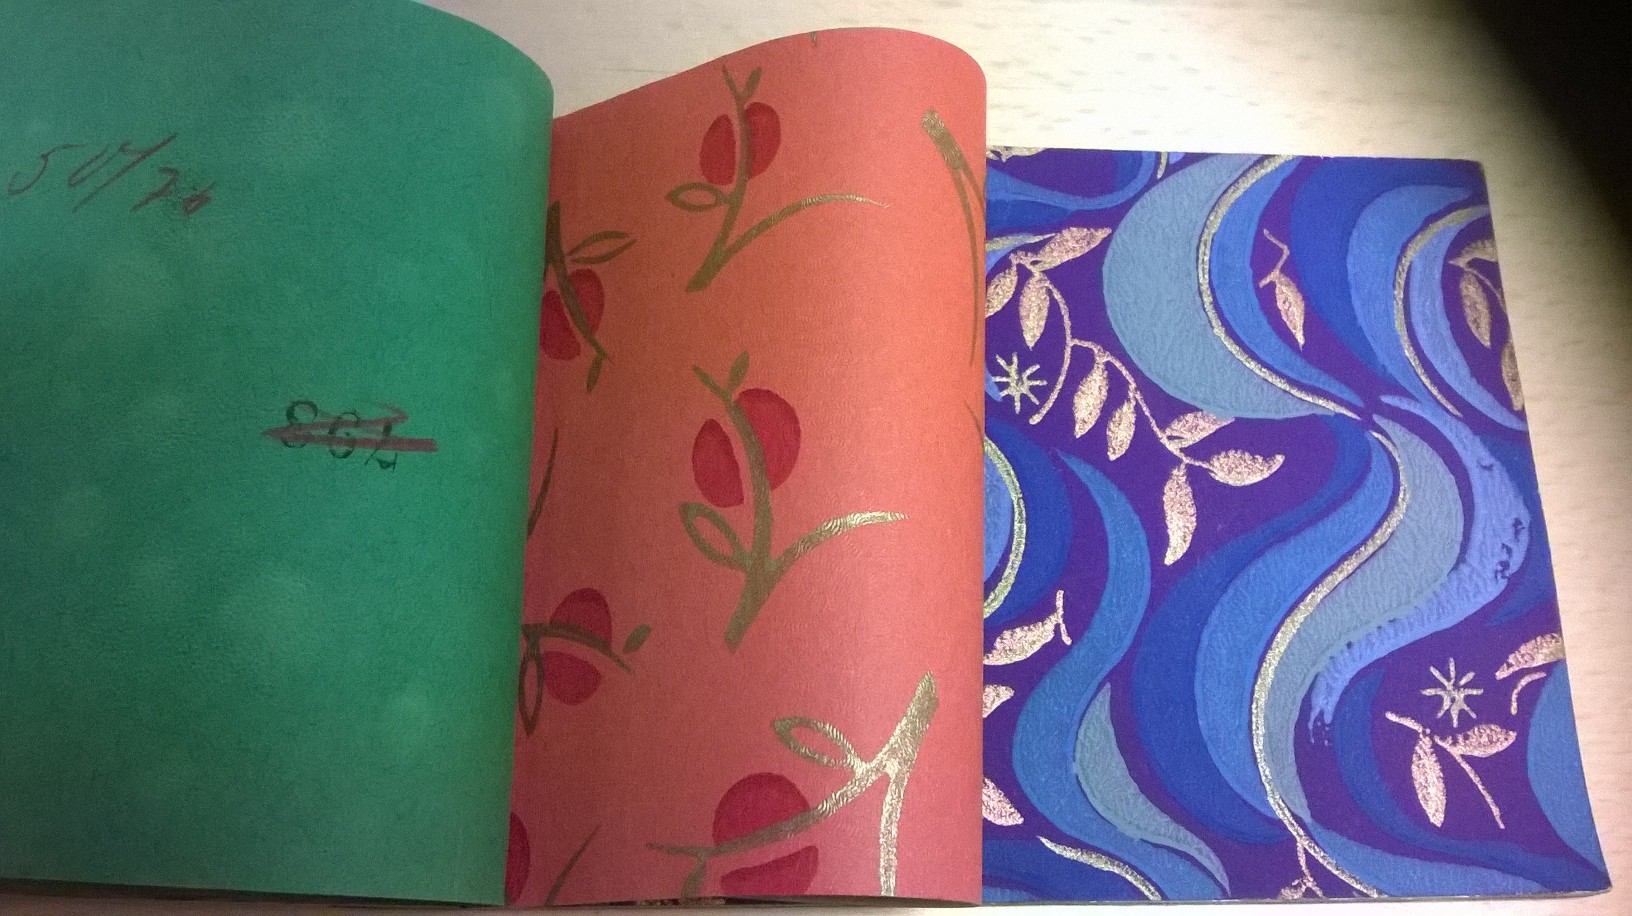 Uppslagen provbok med två mönstrade papper, ett rosa med blommor och ett blått med mönster i silver. 